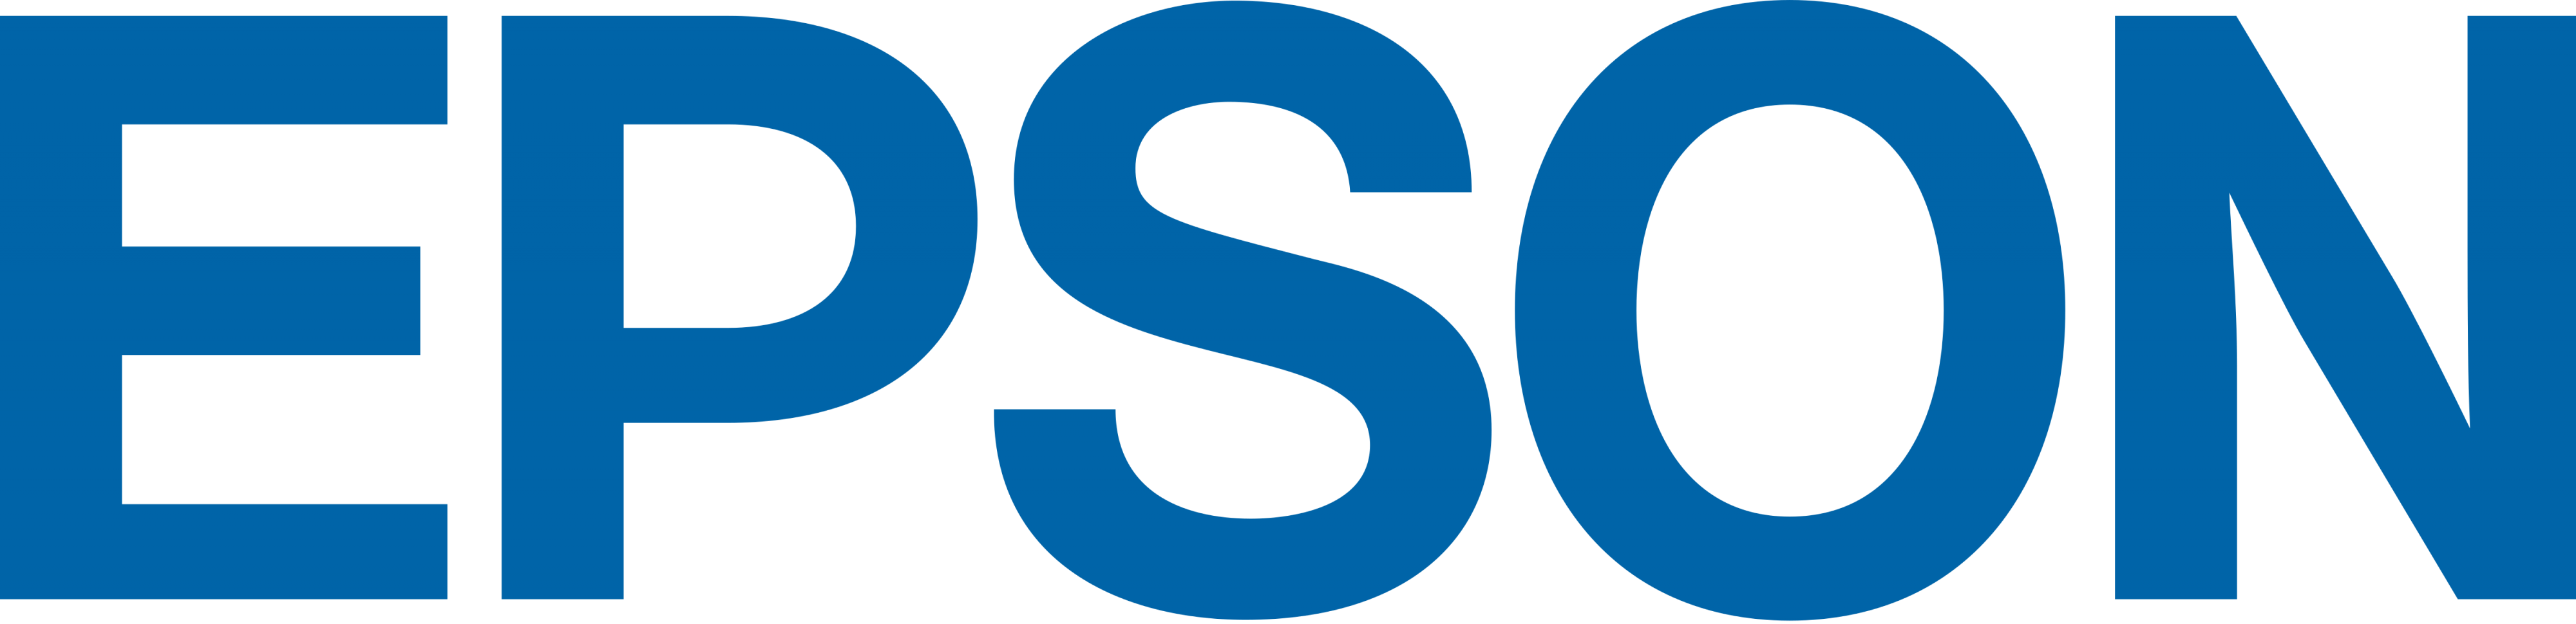 Epson Logo.